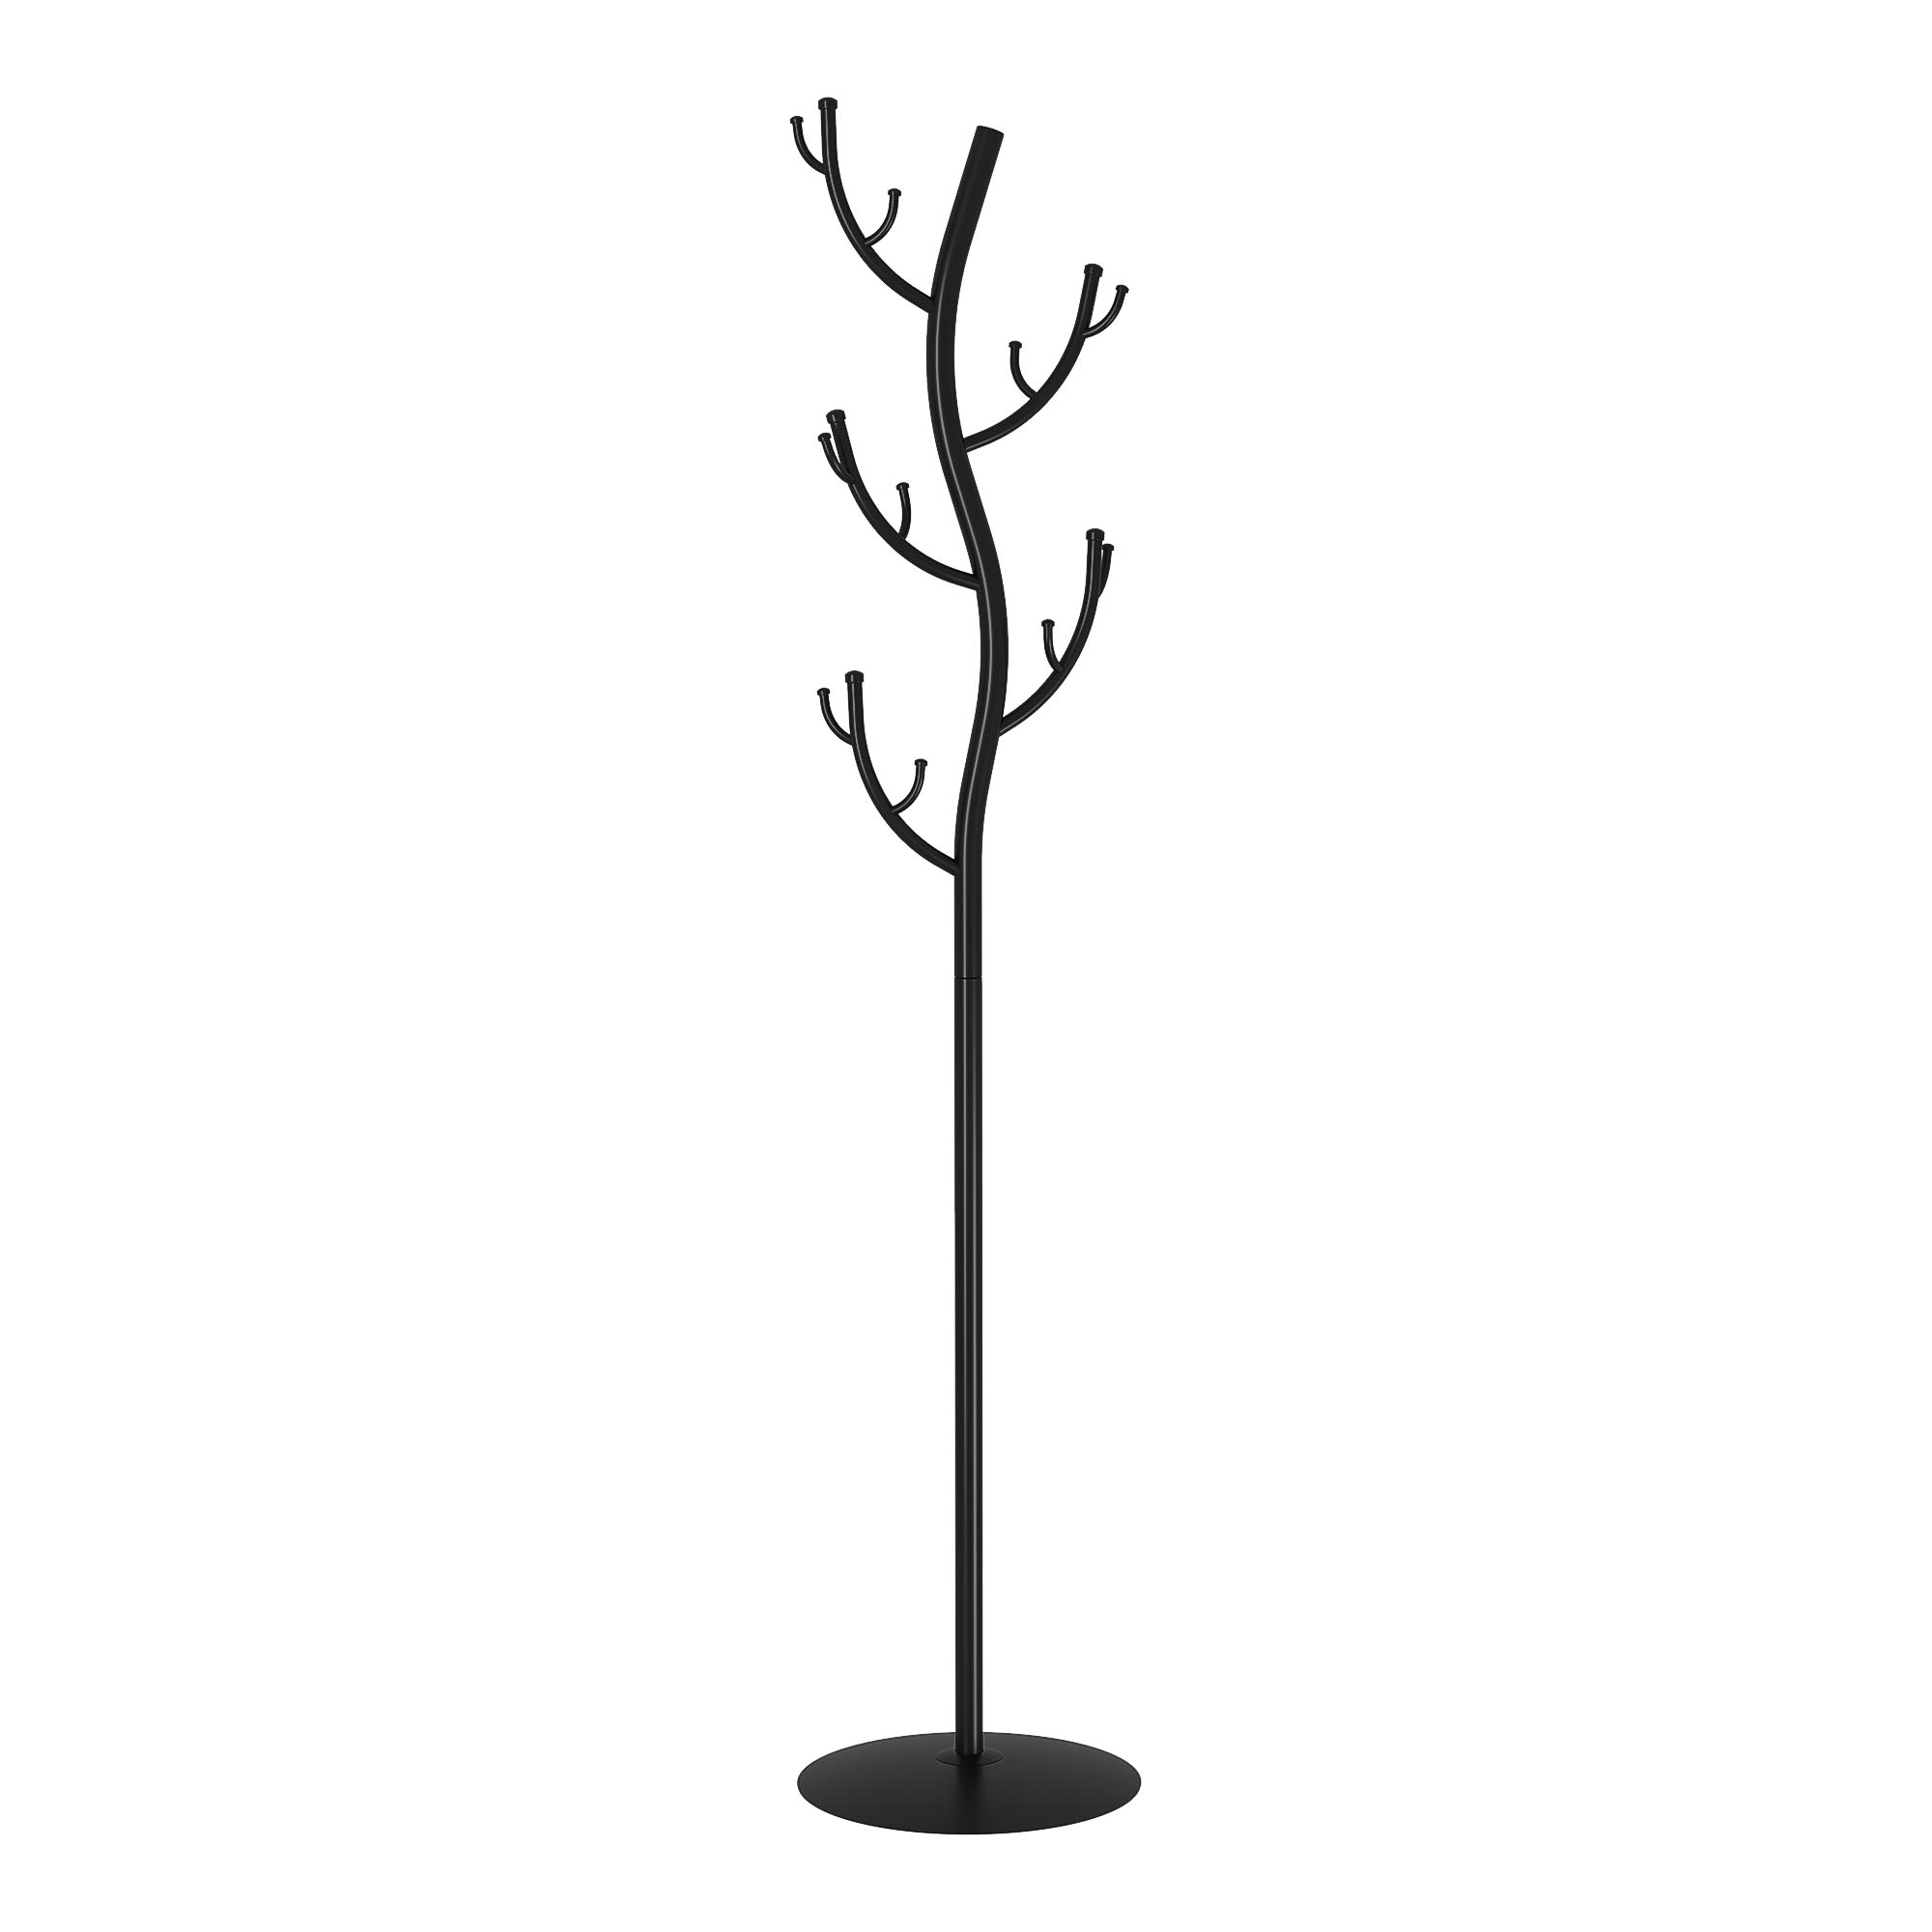 Вешалка напольная ЗМИ Дерево черная 37,5х37,5х181 см вешалка кружева 5 зми черная 44×4×13 см